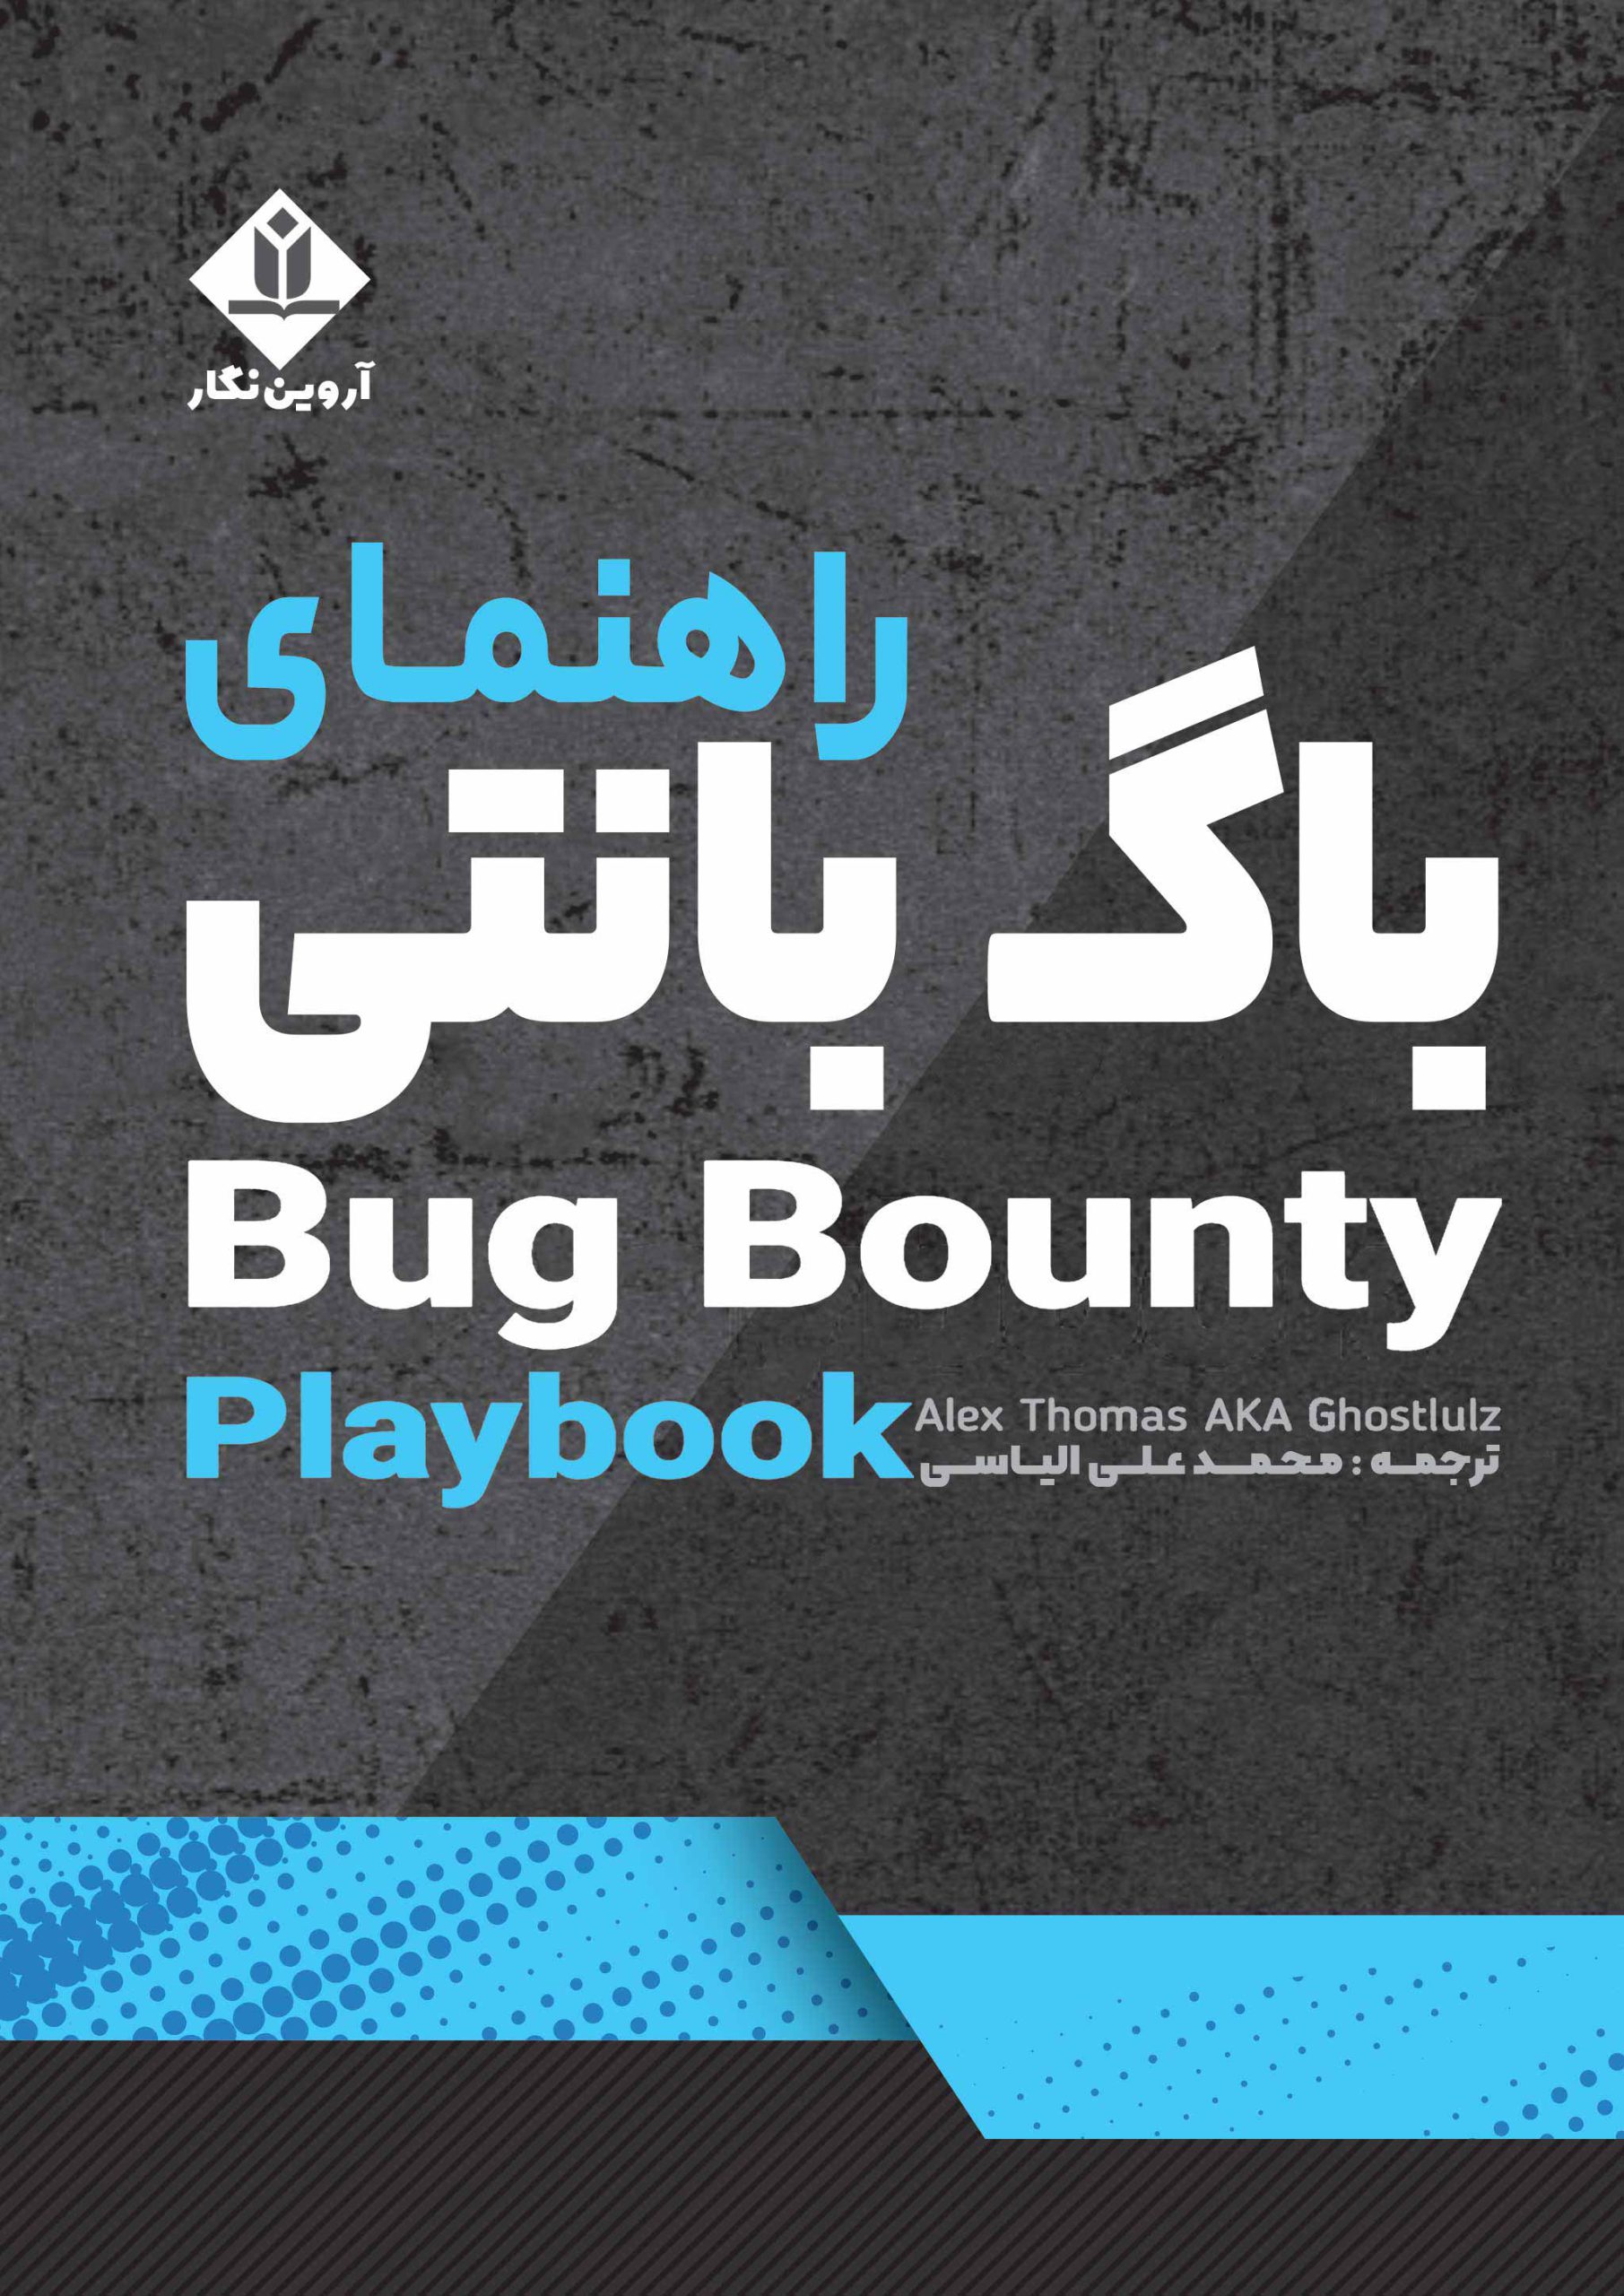 کتاب راهنمای باگ بانتی (Bug Bounty) – آروین نگار